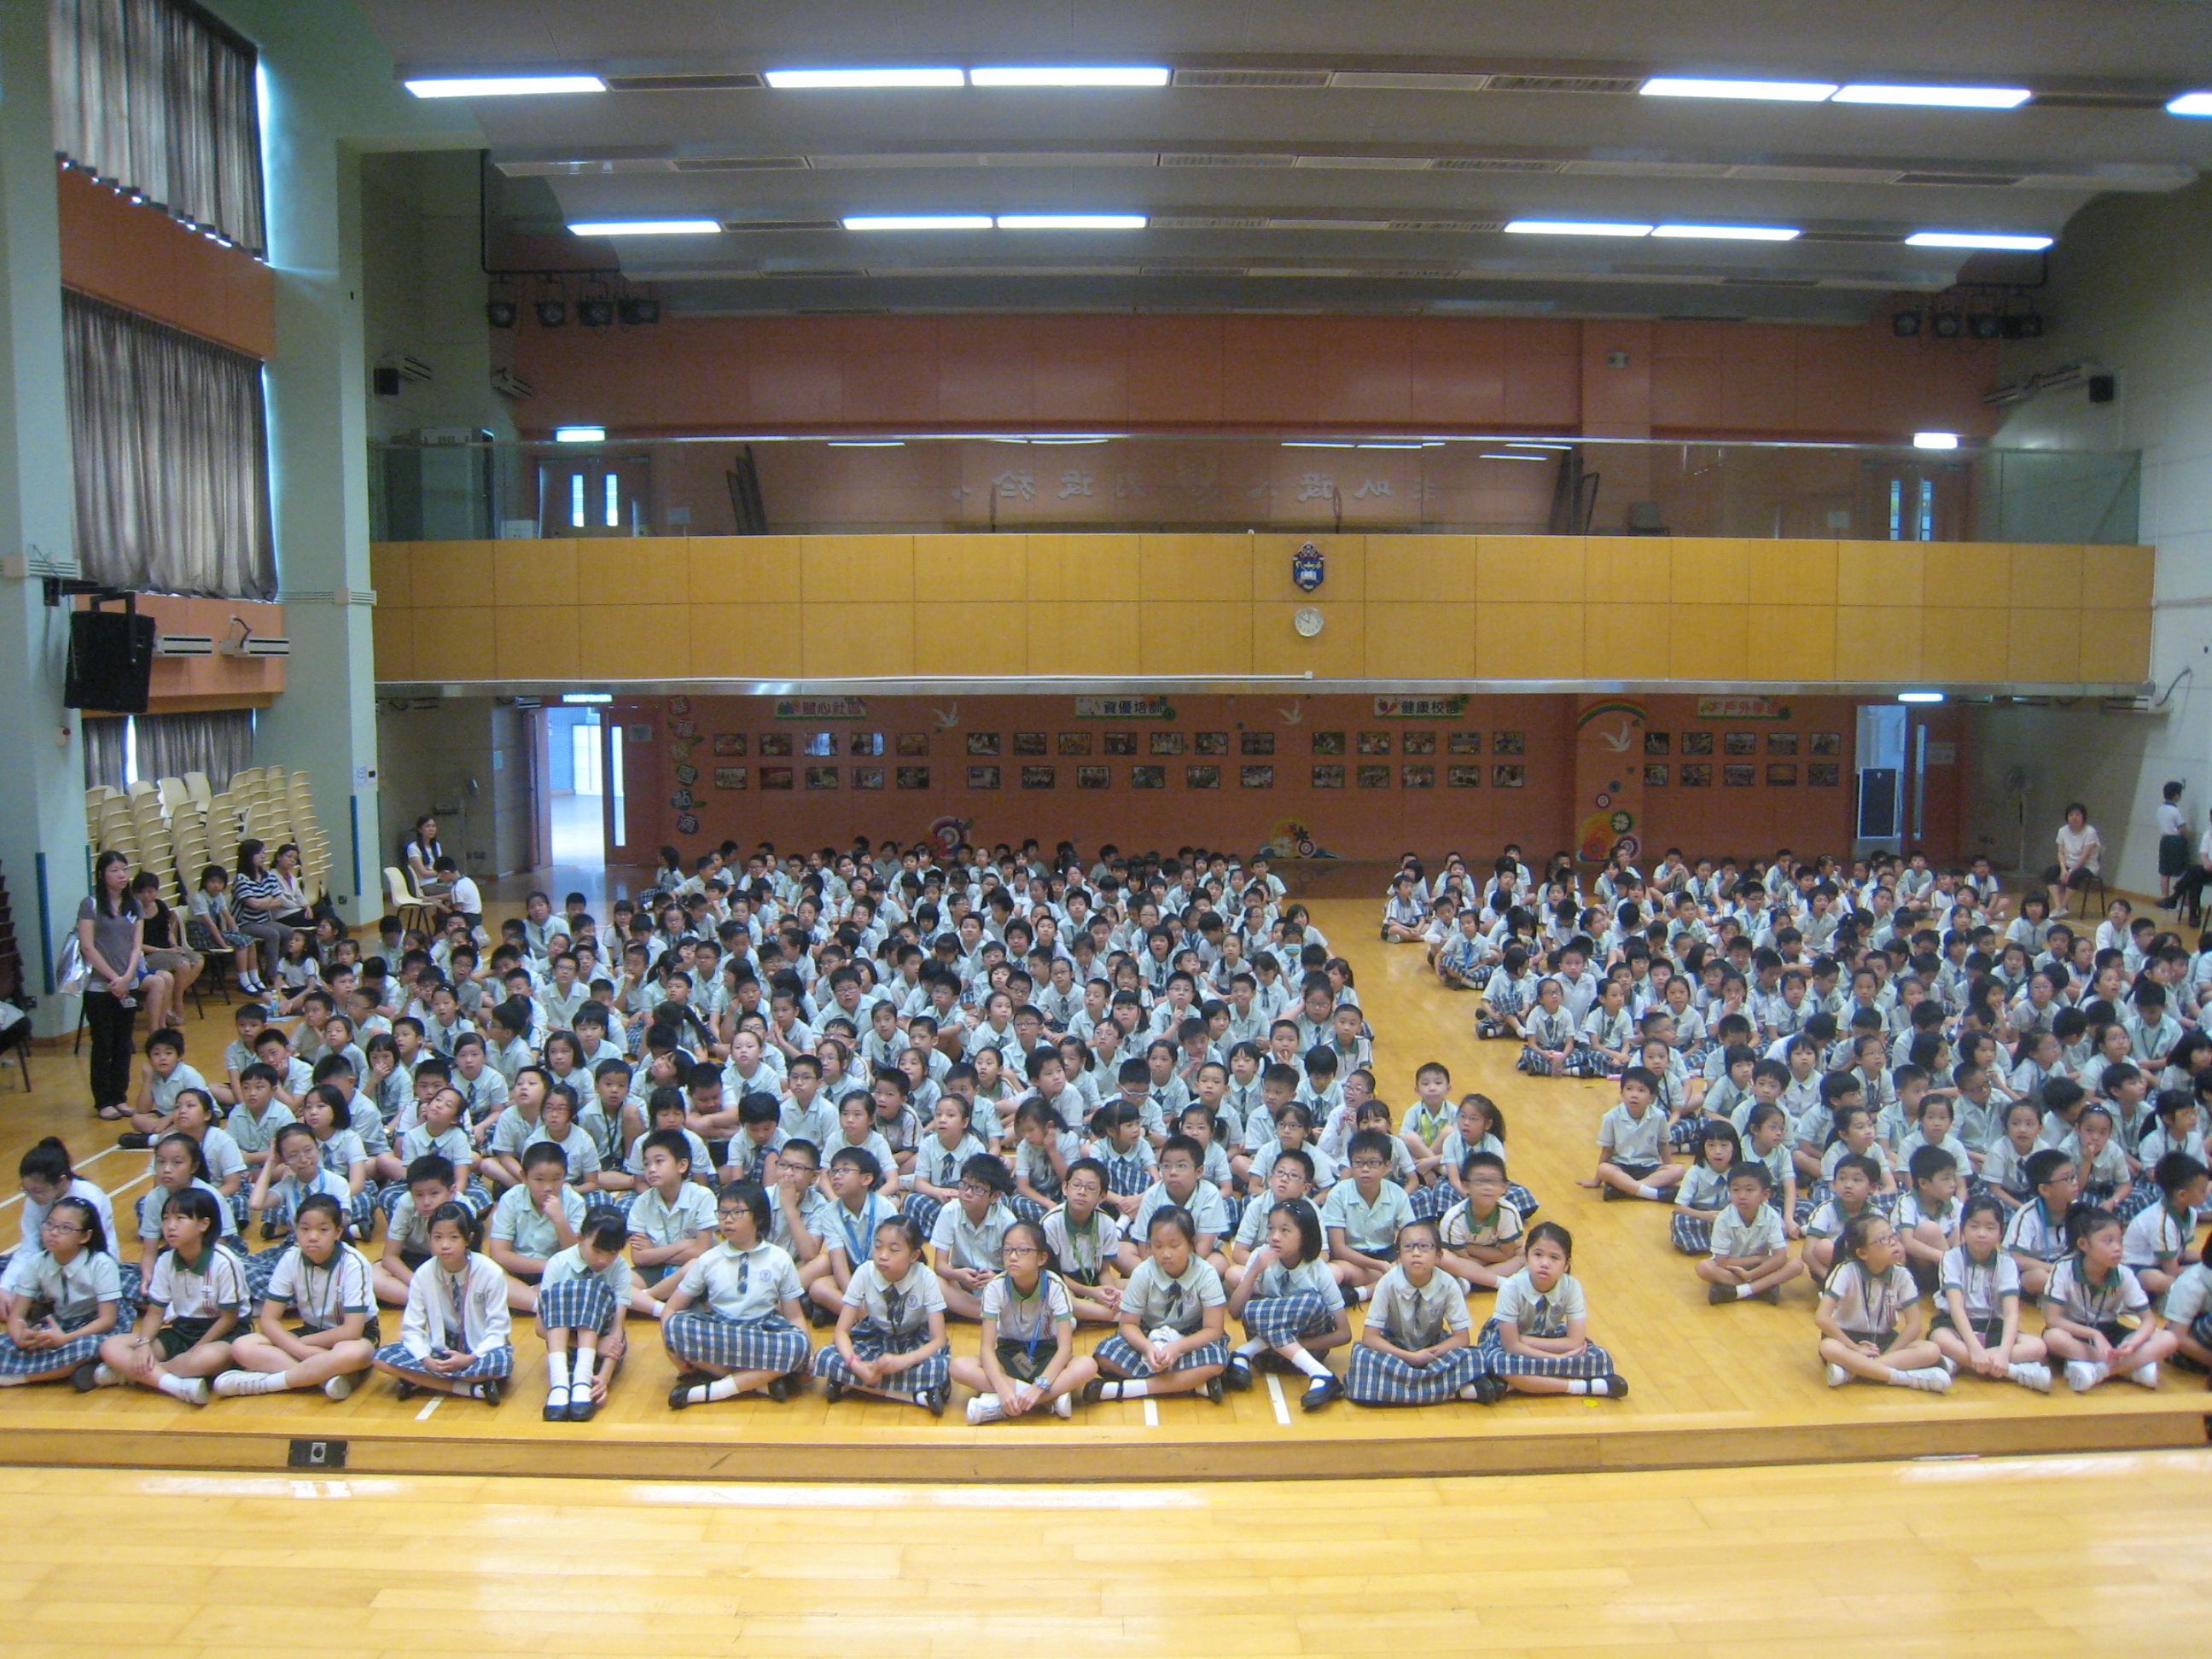 S.K.H. Kei Fook Primary School